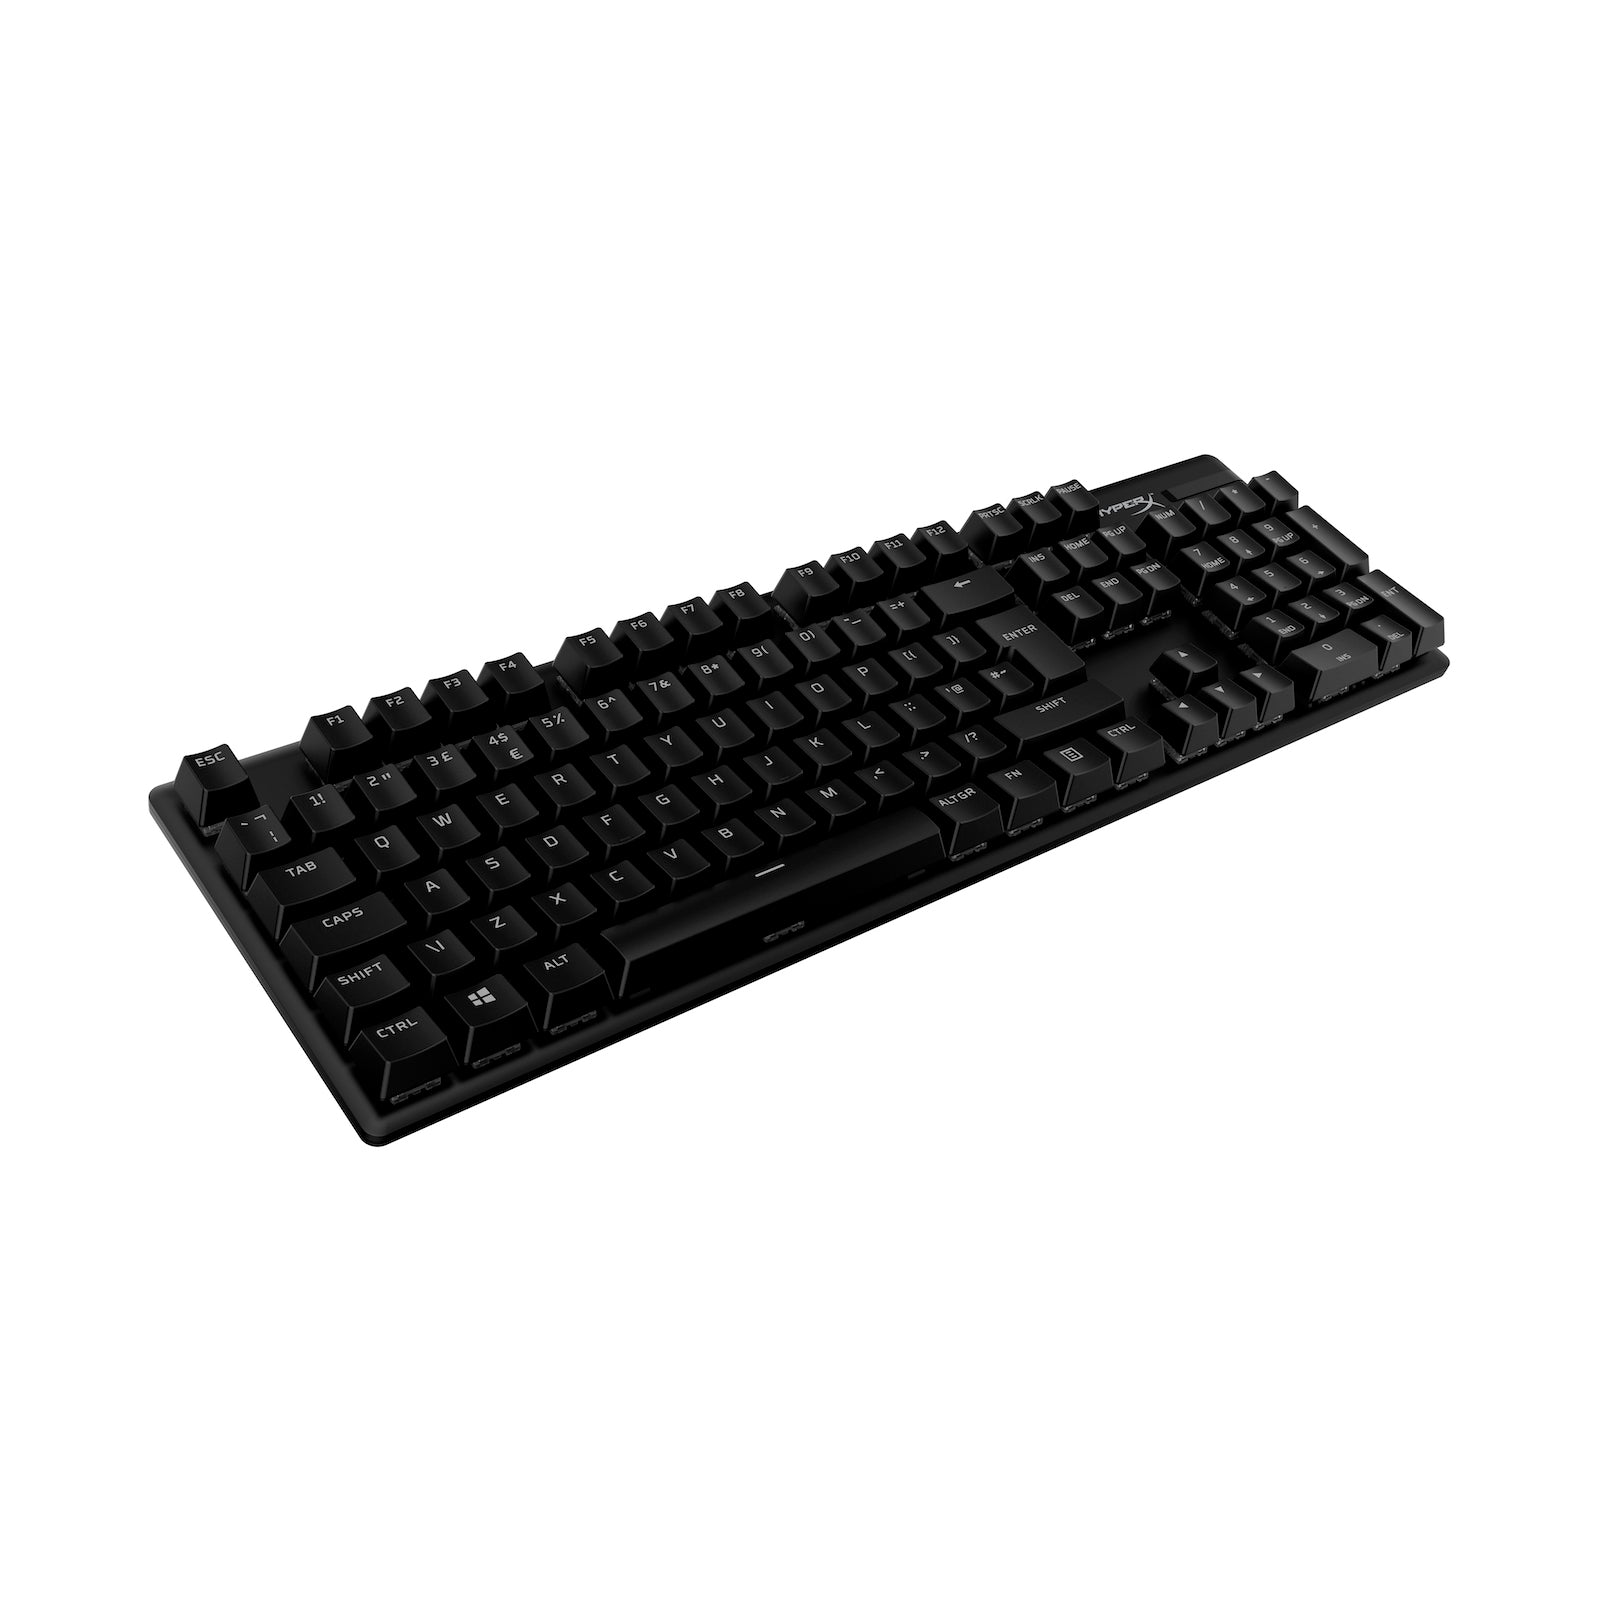 HyperX PBT Keycaps in Black on an unlit keyboard